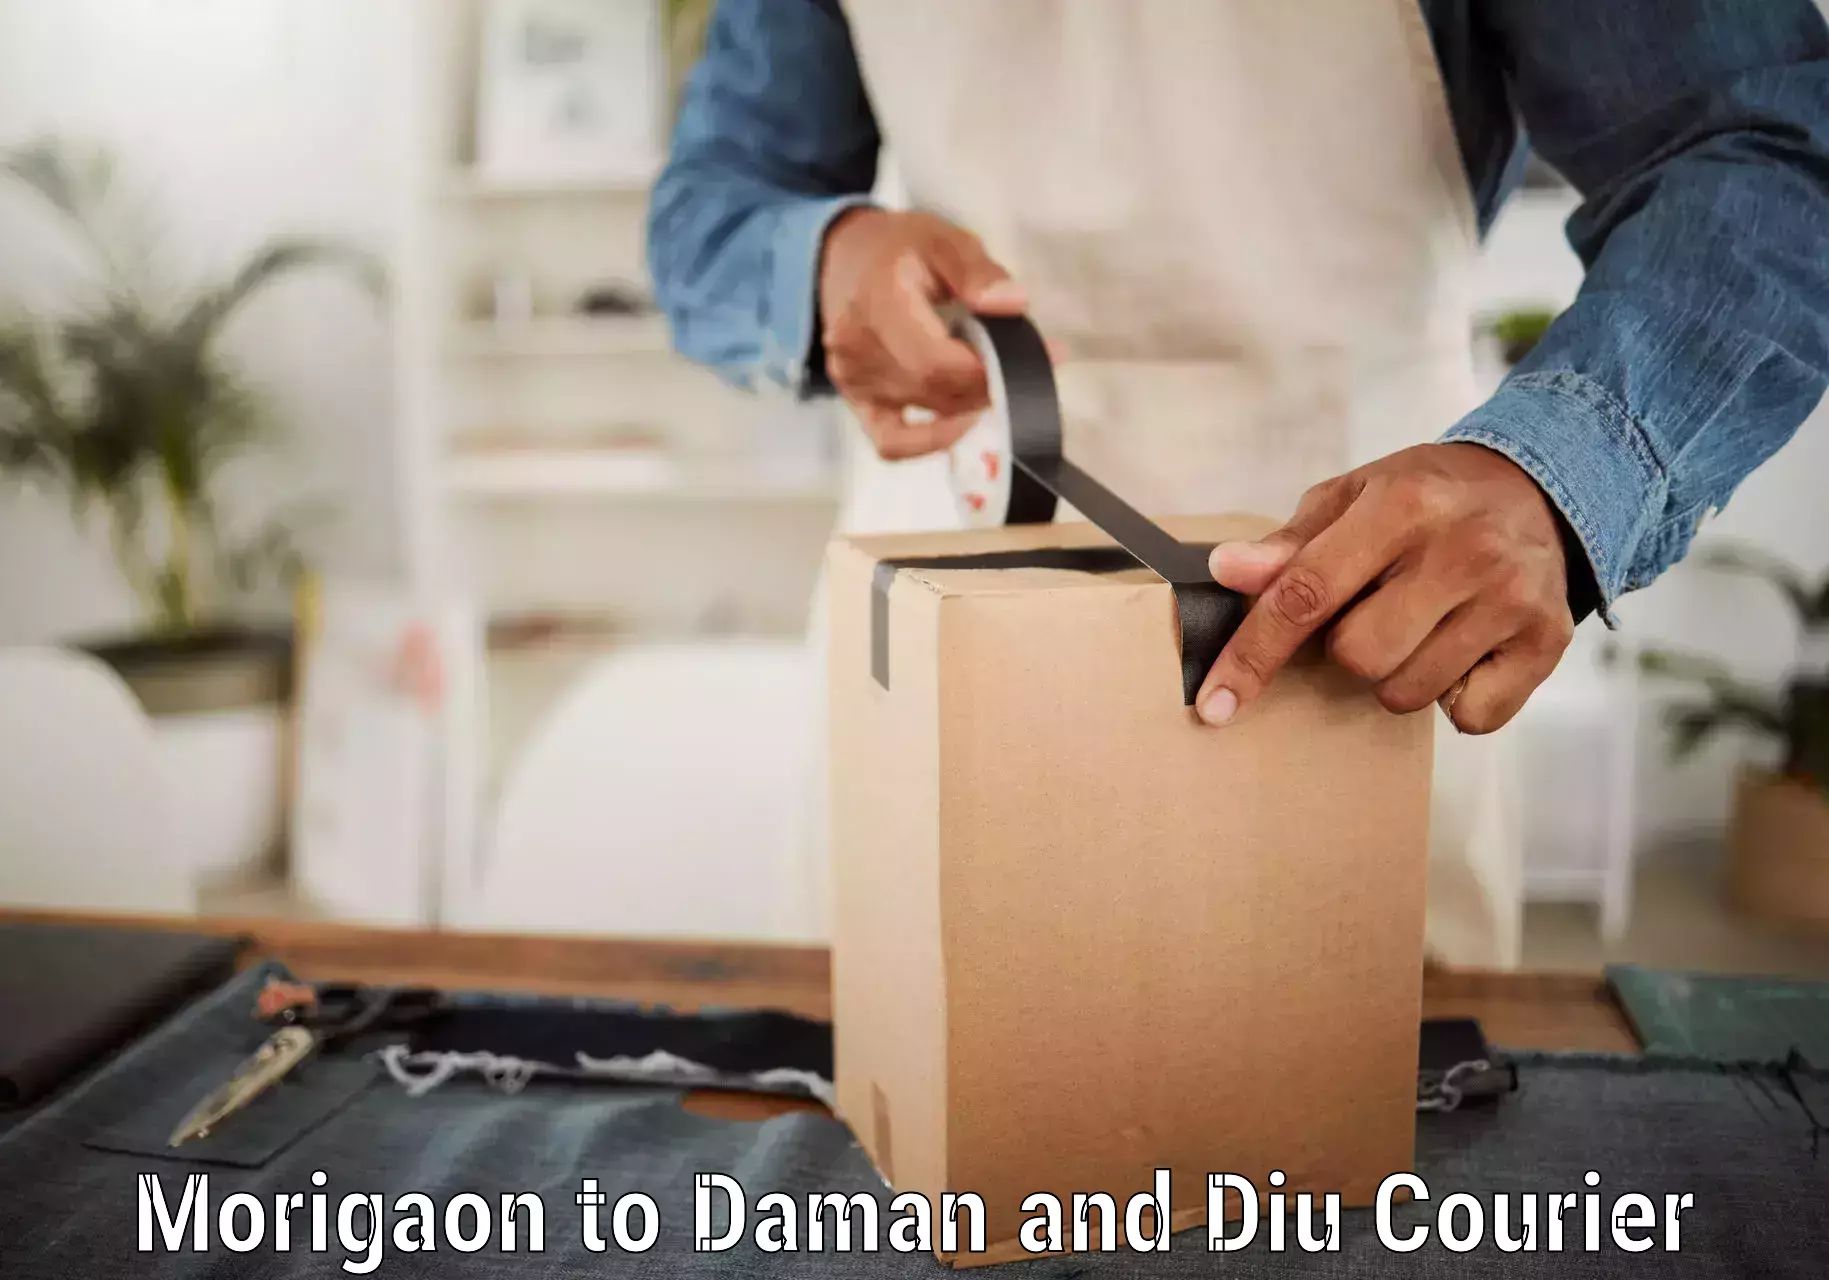 Bulk courier orders Morigaon to Daman and Diu